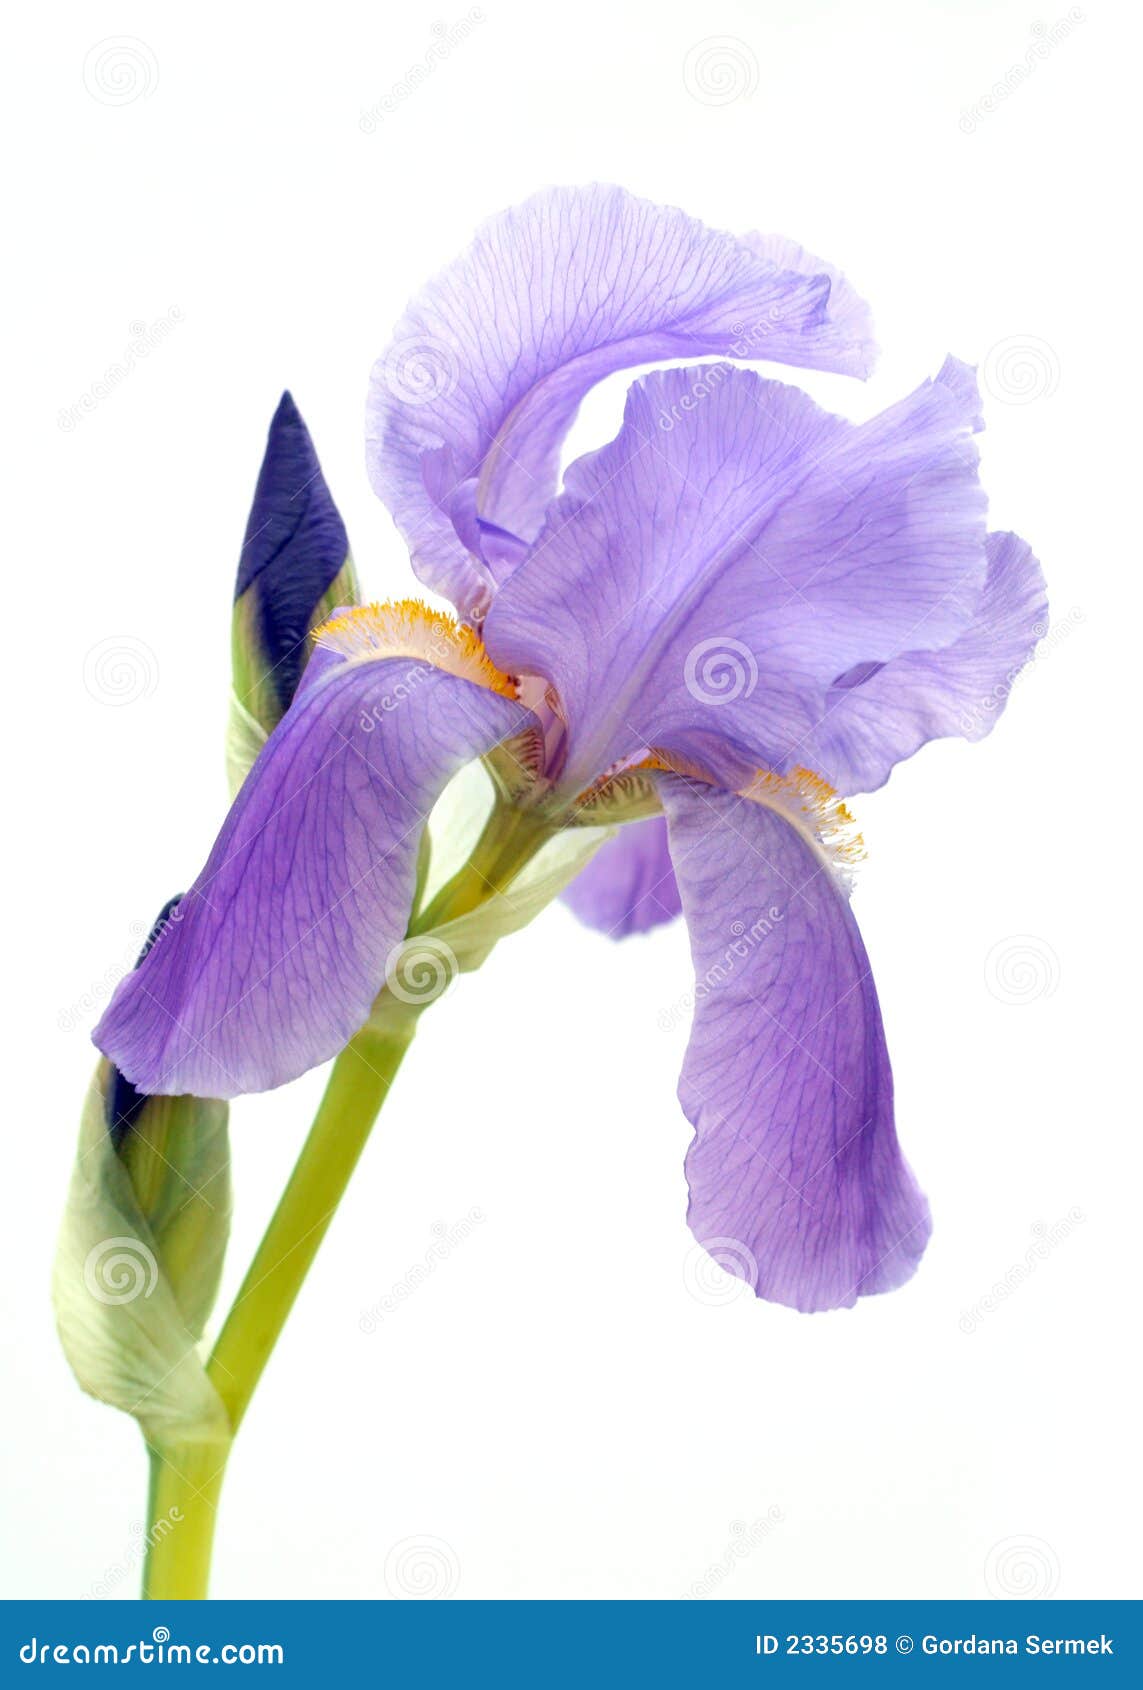 18,18 Iris Purple Stem Photos   Free & Royalty Free Stock Photos ...